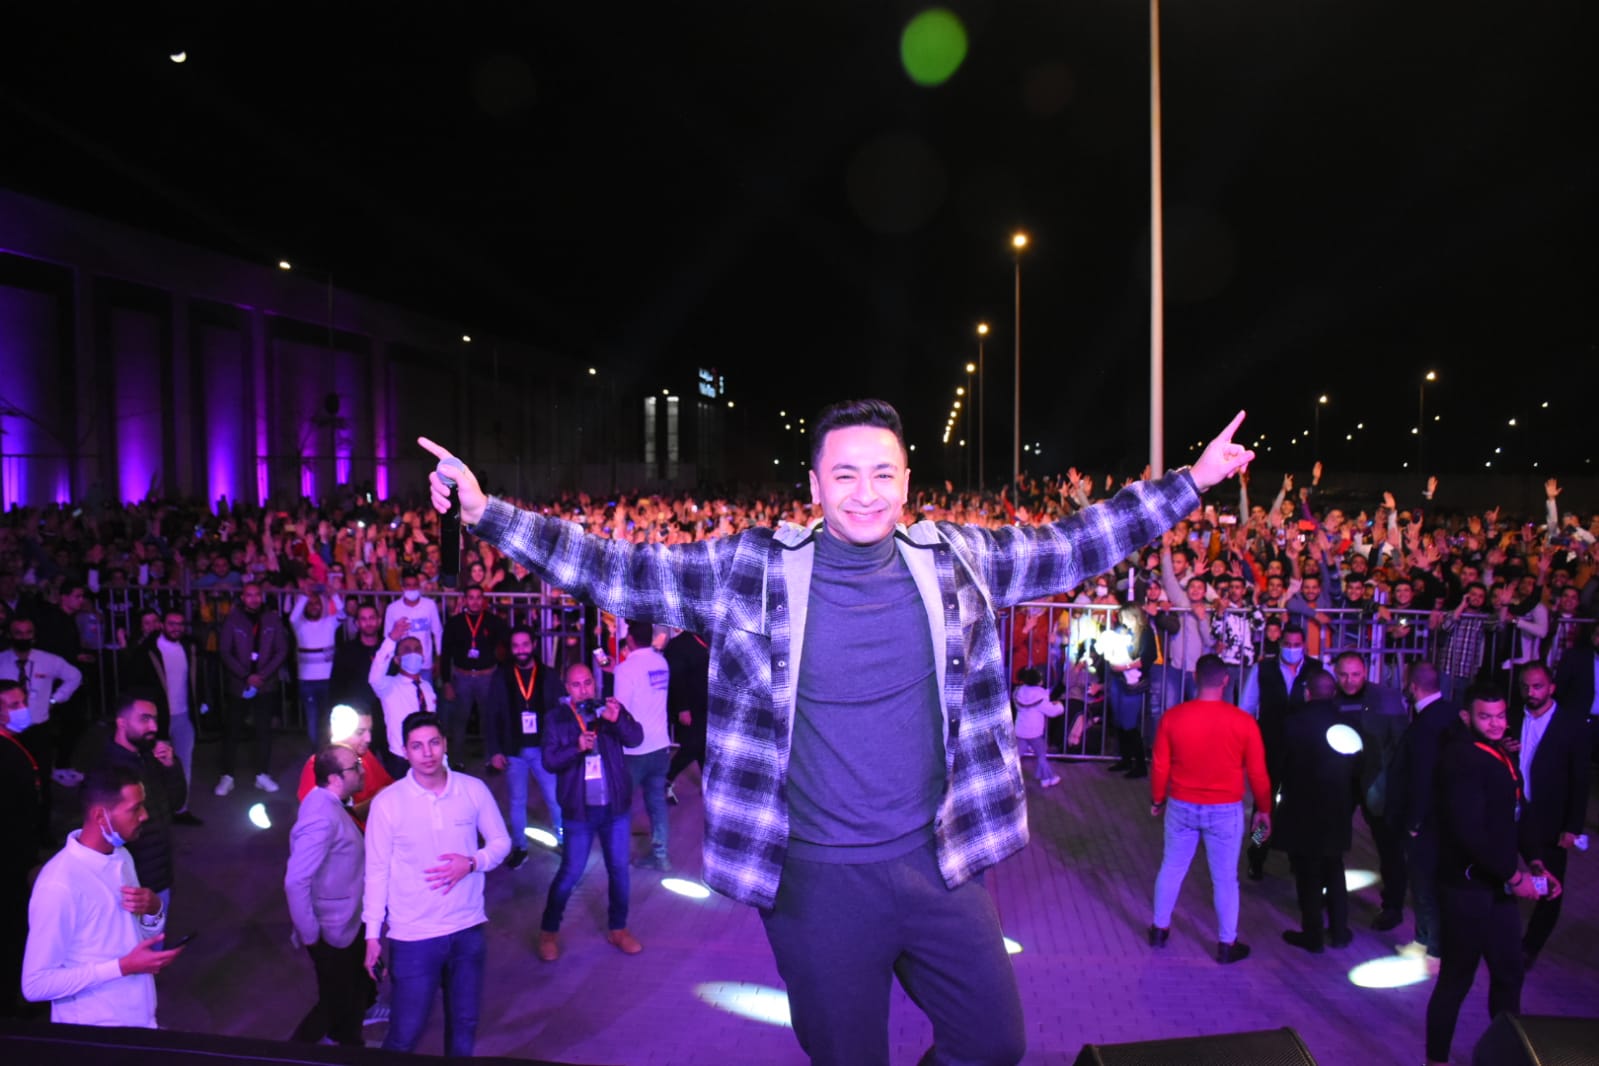 حمادة هلال يشعل الأجواء وسط الآلاف في حفل طنطا (2)